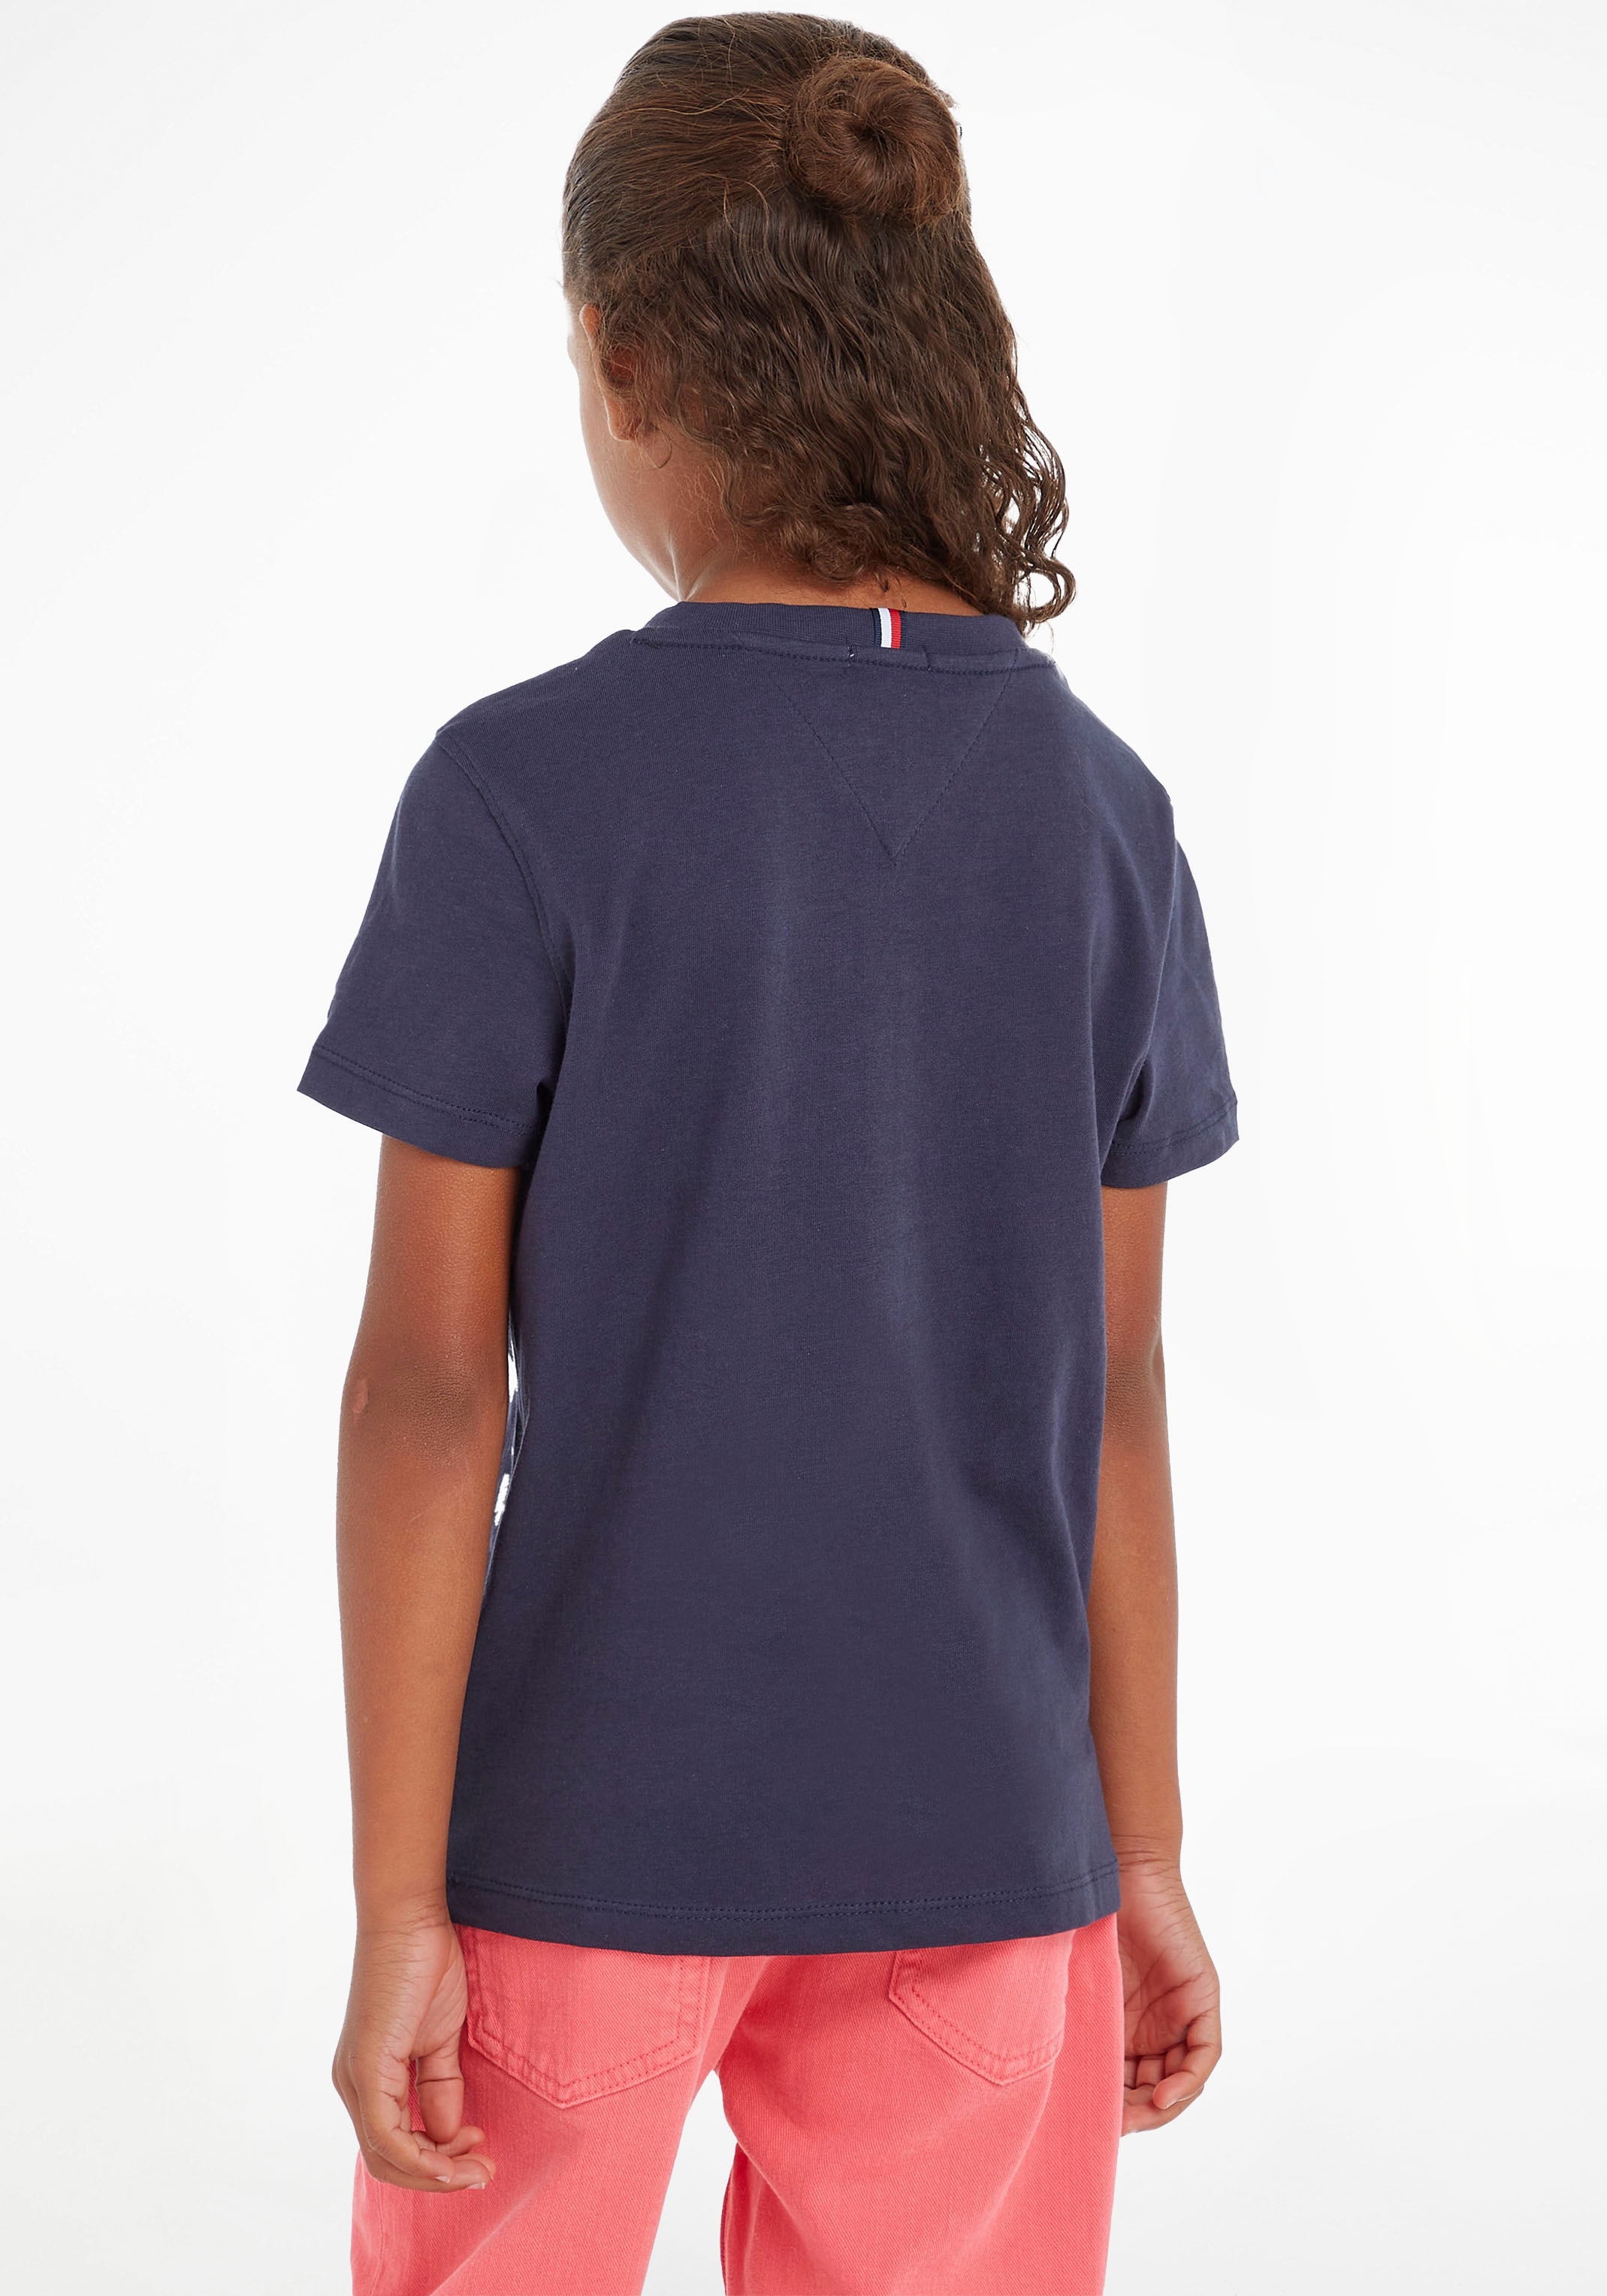 Trendige Tommy Hilfiger T-Shirt »ESSENTIAL TEE«, für Jungen und Mädchen  ohne Mindestbestellwert kaufen